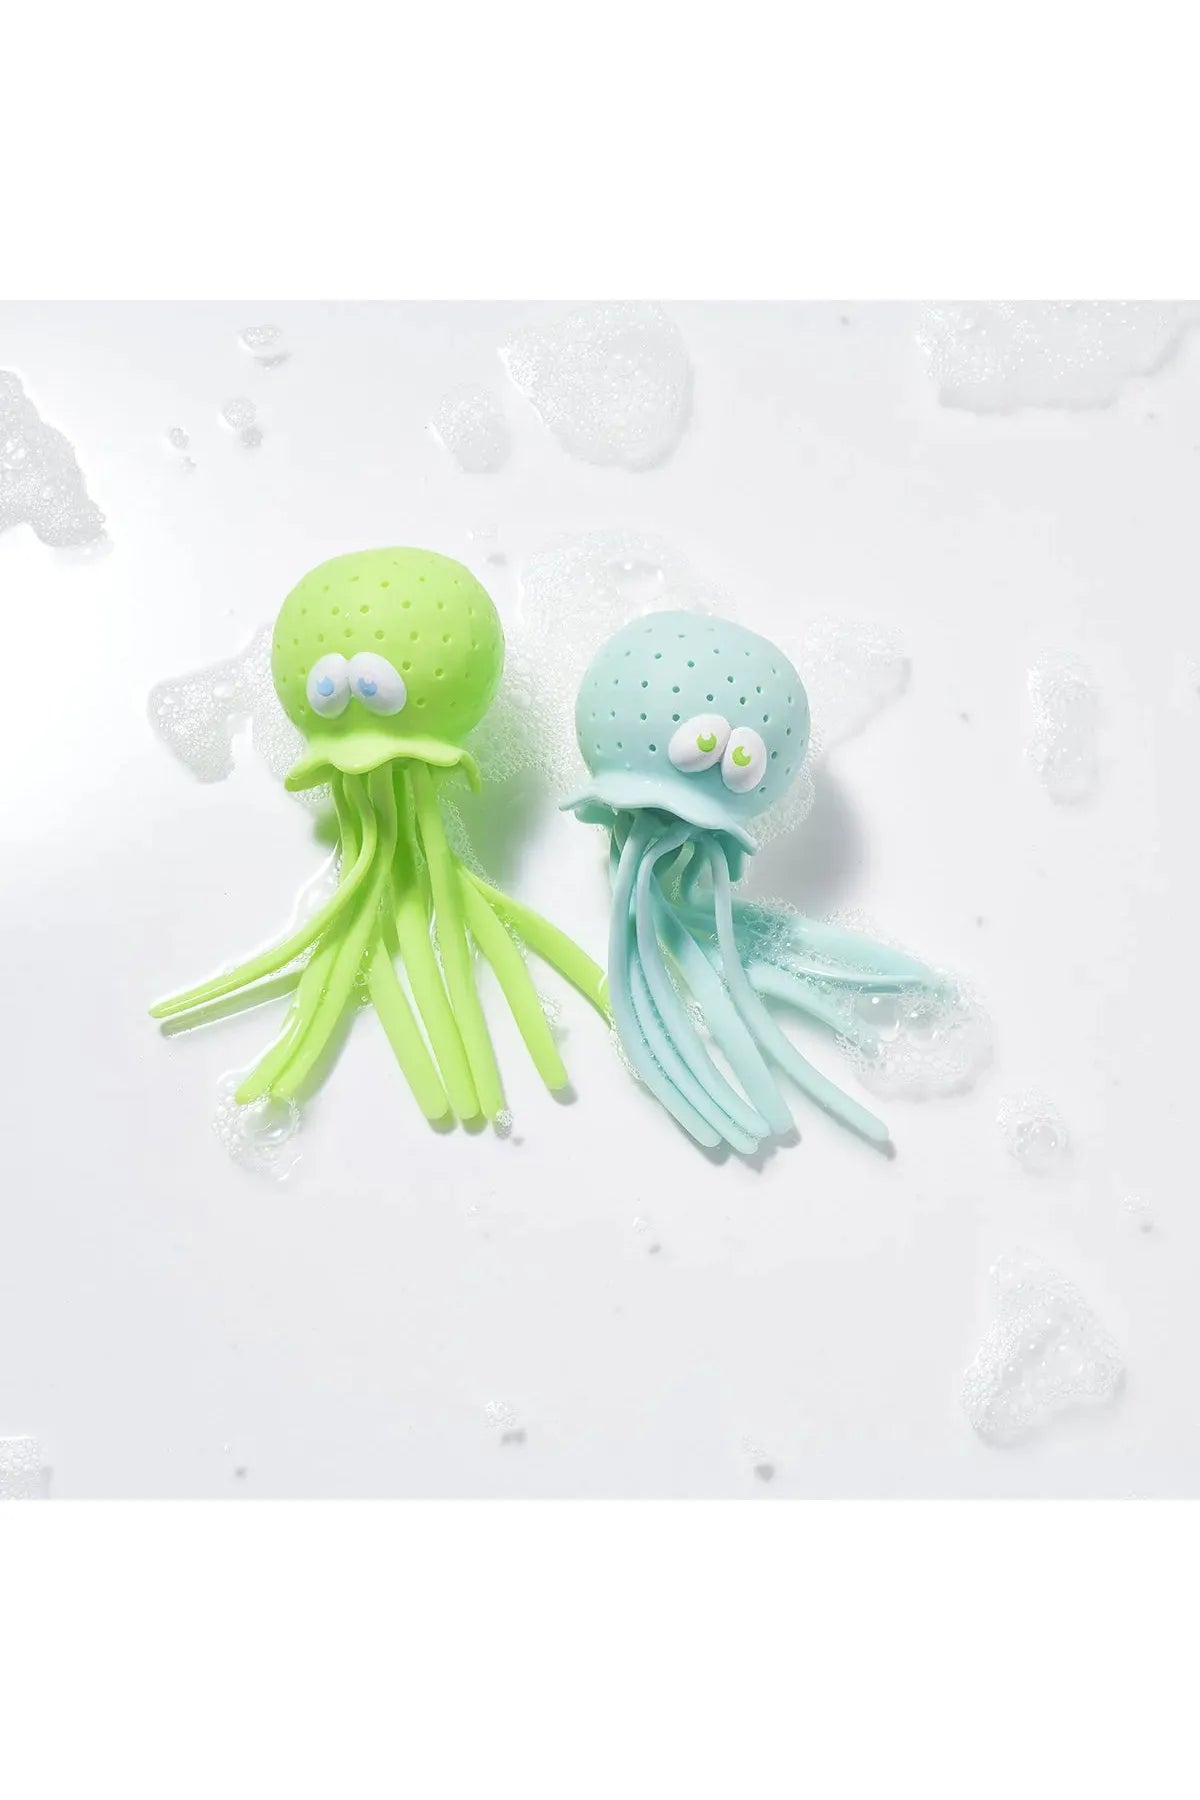 Octopus Bath Toys Mint/Baby Blue Set of 2